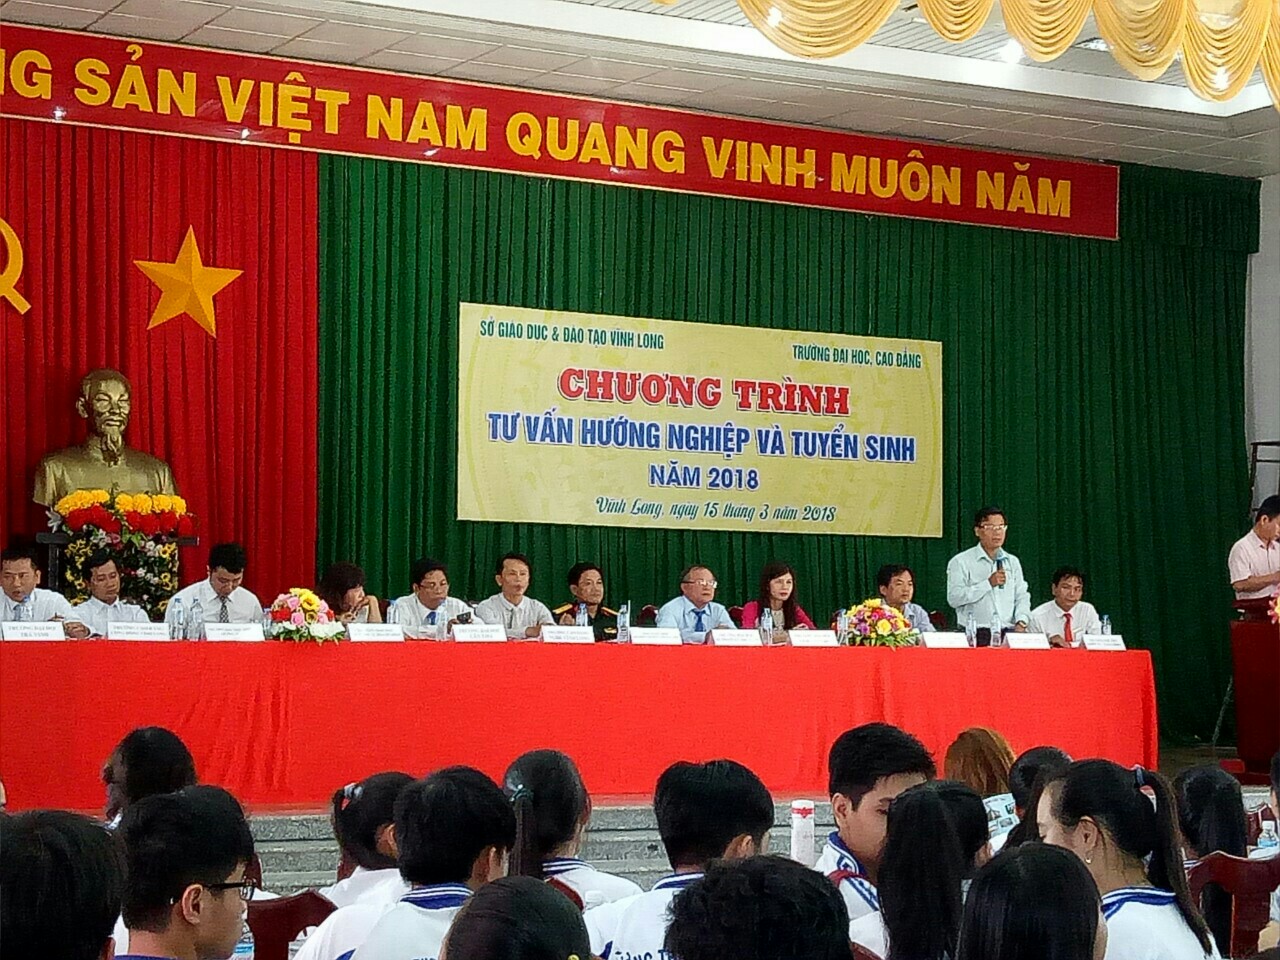 Phân hiệu ĐHQG-HCM tại tỉnh Bến Tre tư vấn tuyển sinh 2018 tại địa bàn tỉnh Vĩnh Long